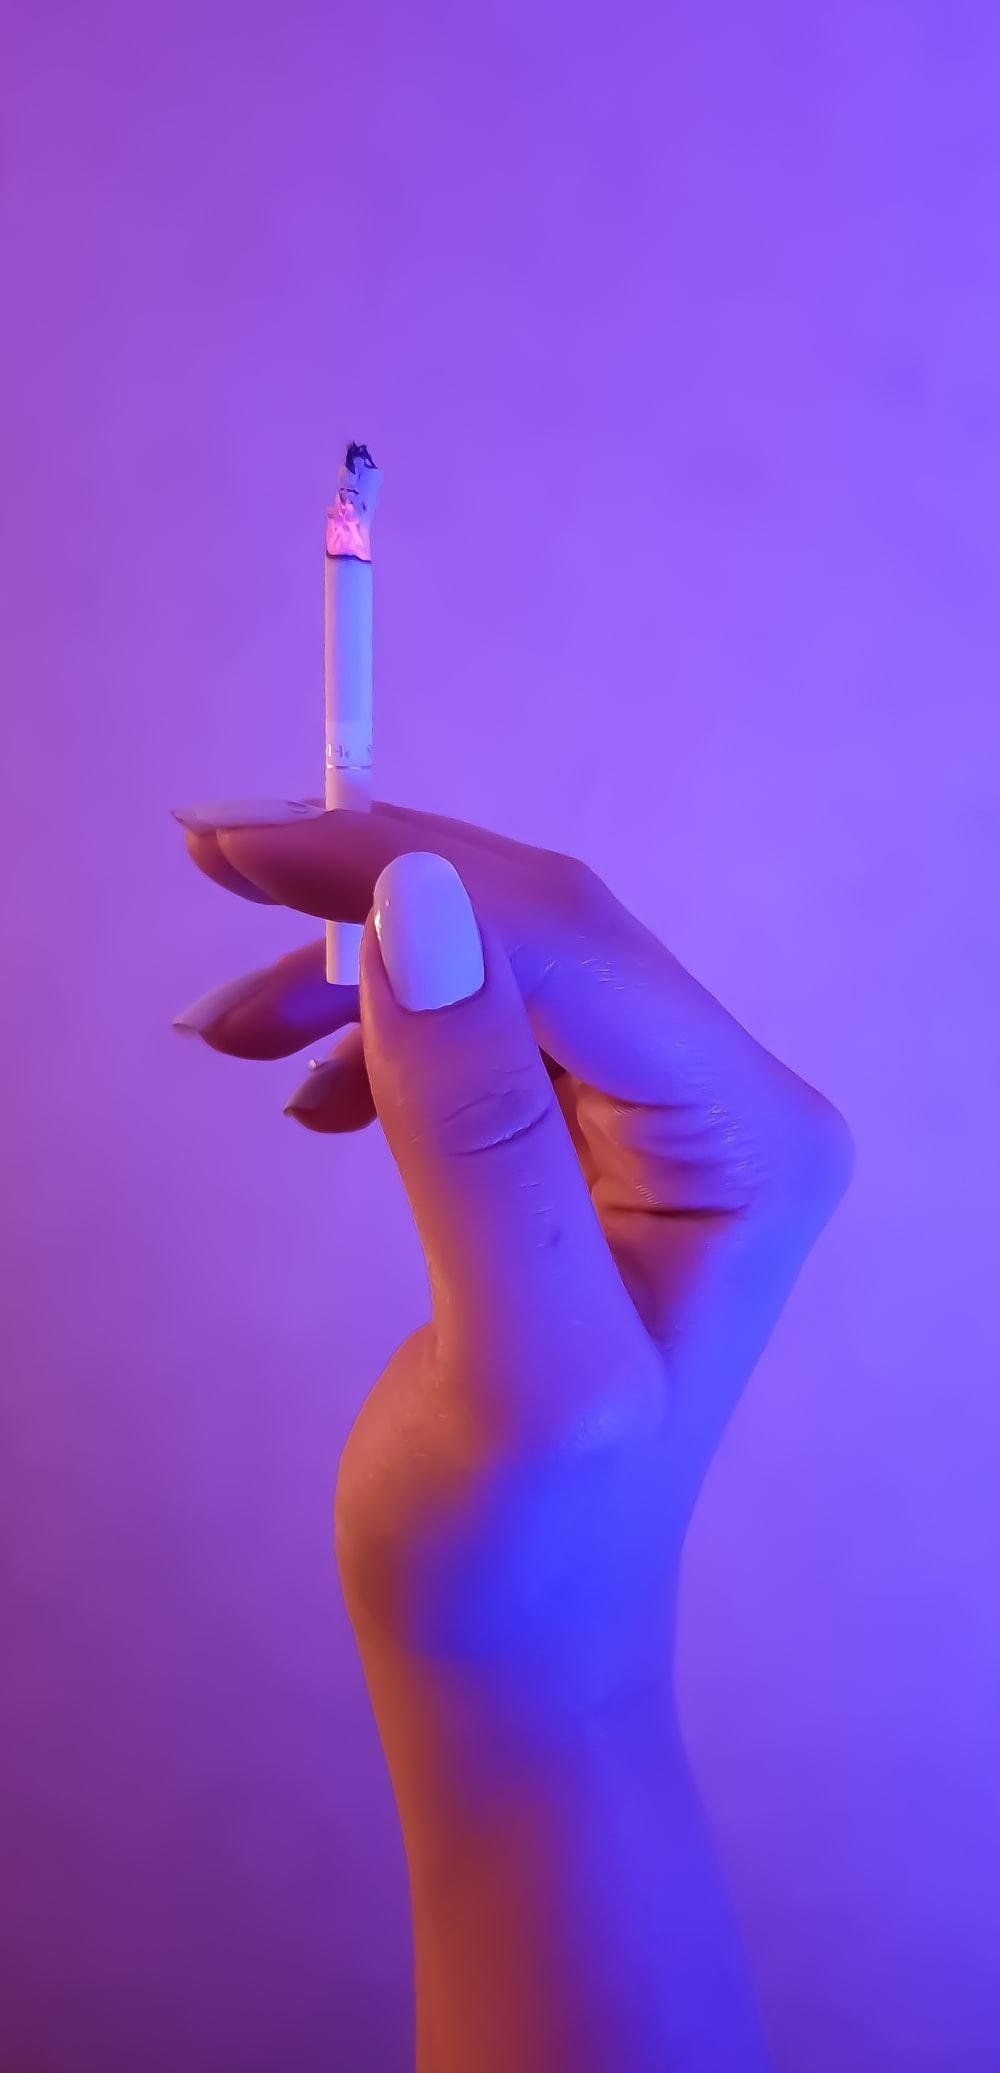 Person holding a lit cigarette - Light purple, pastel purple